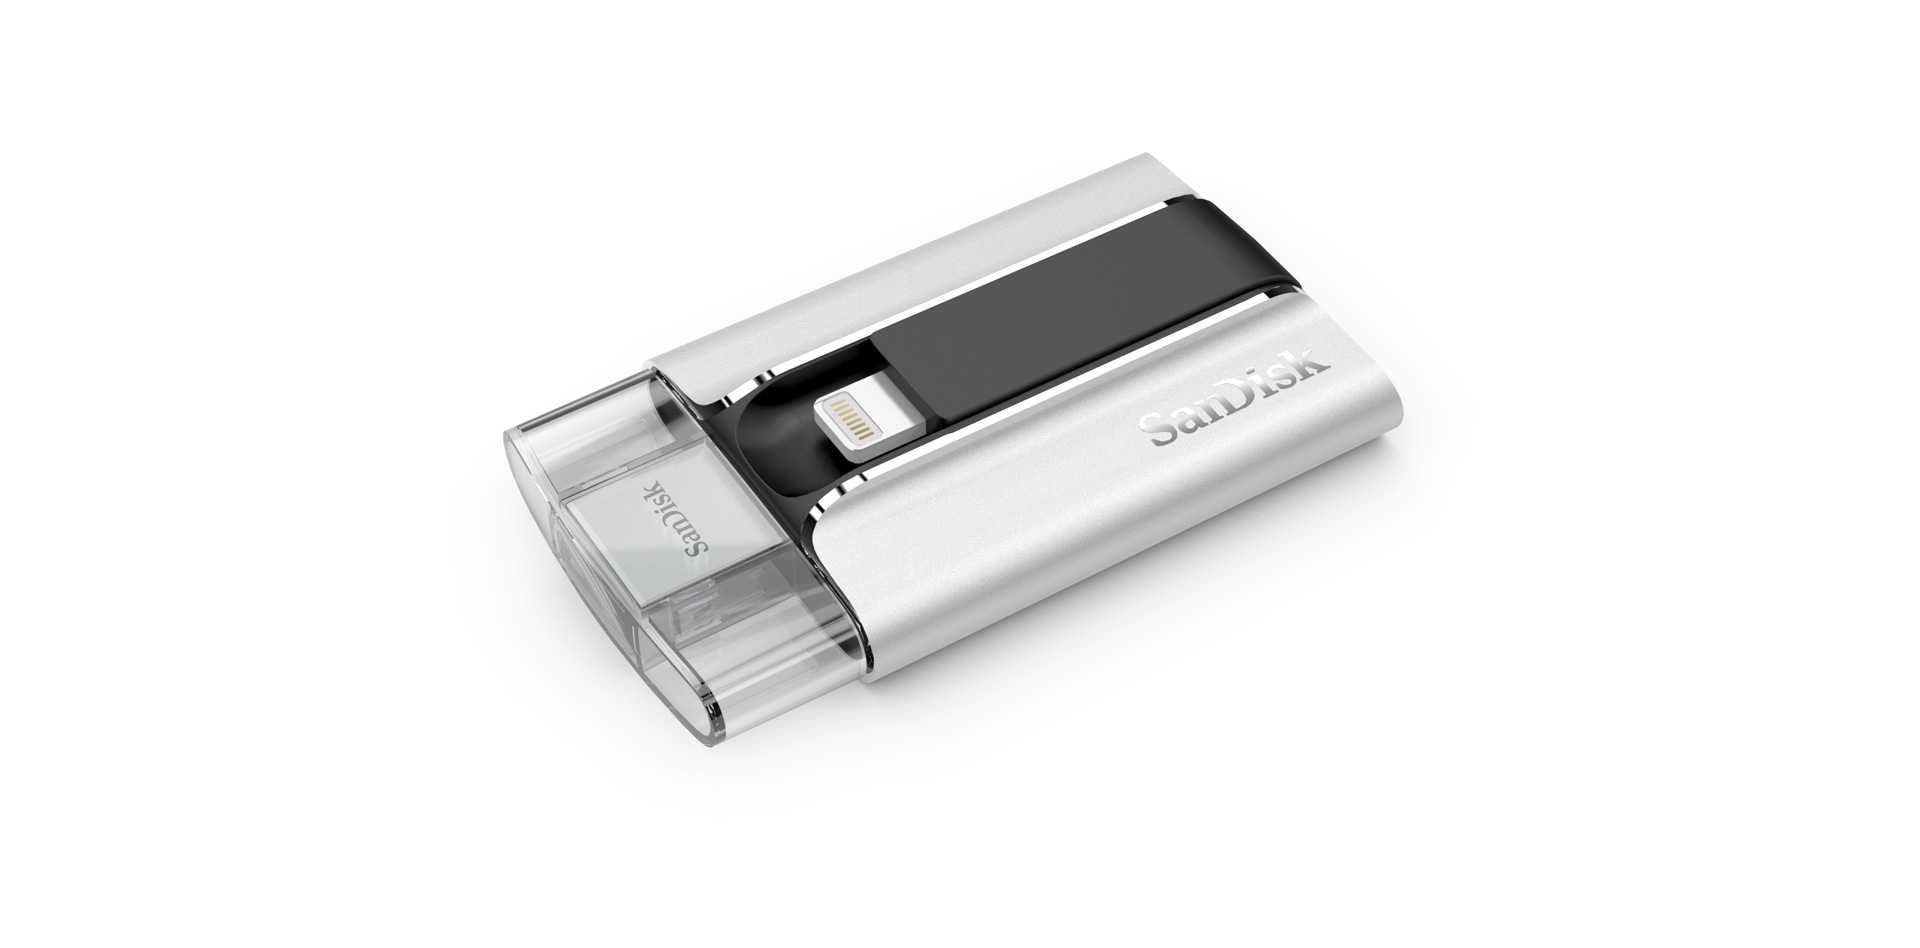 Ein USB-Stick namens iXpand für iPhone und iPad